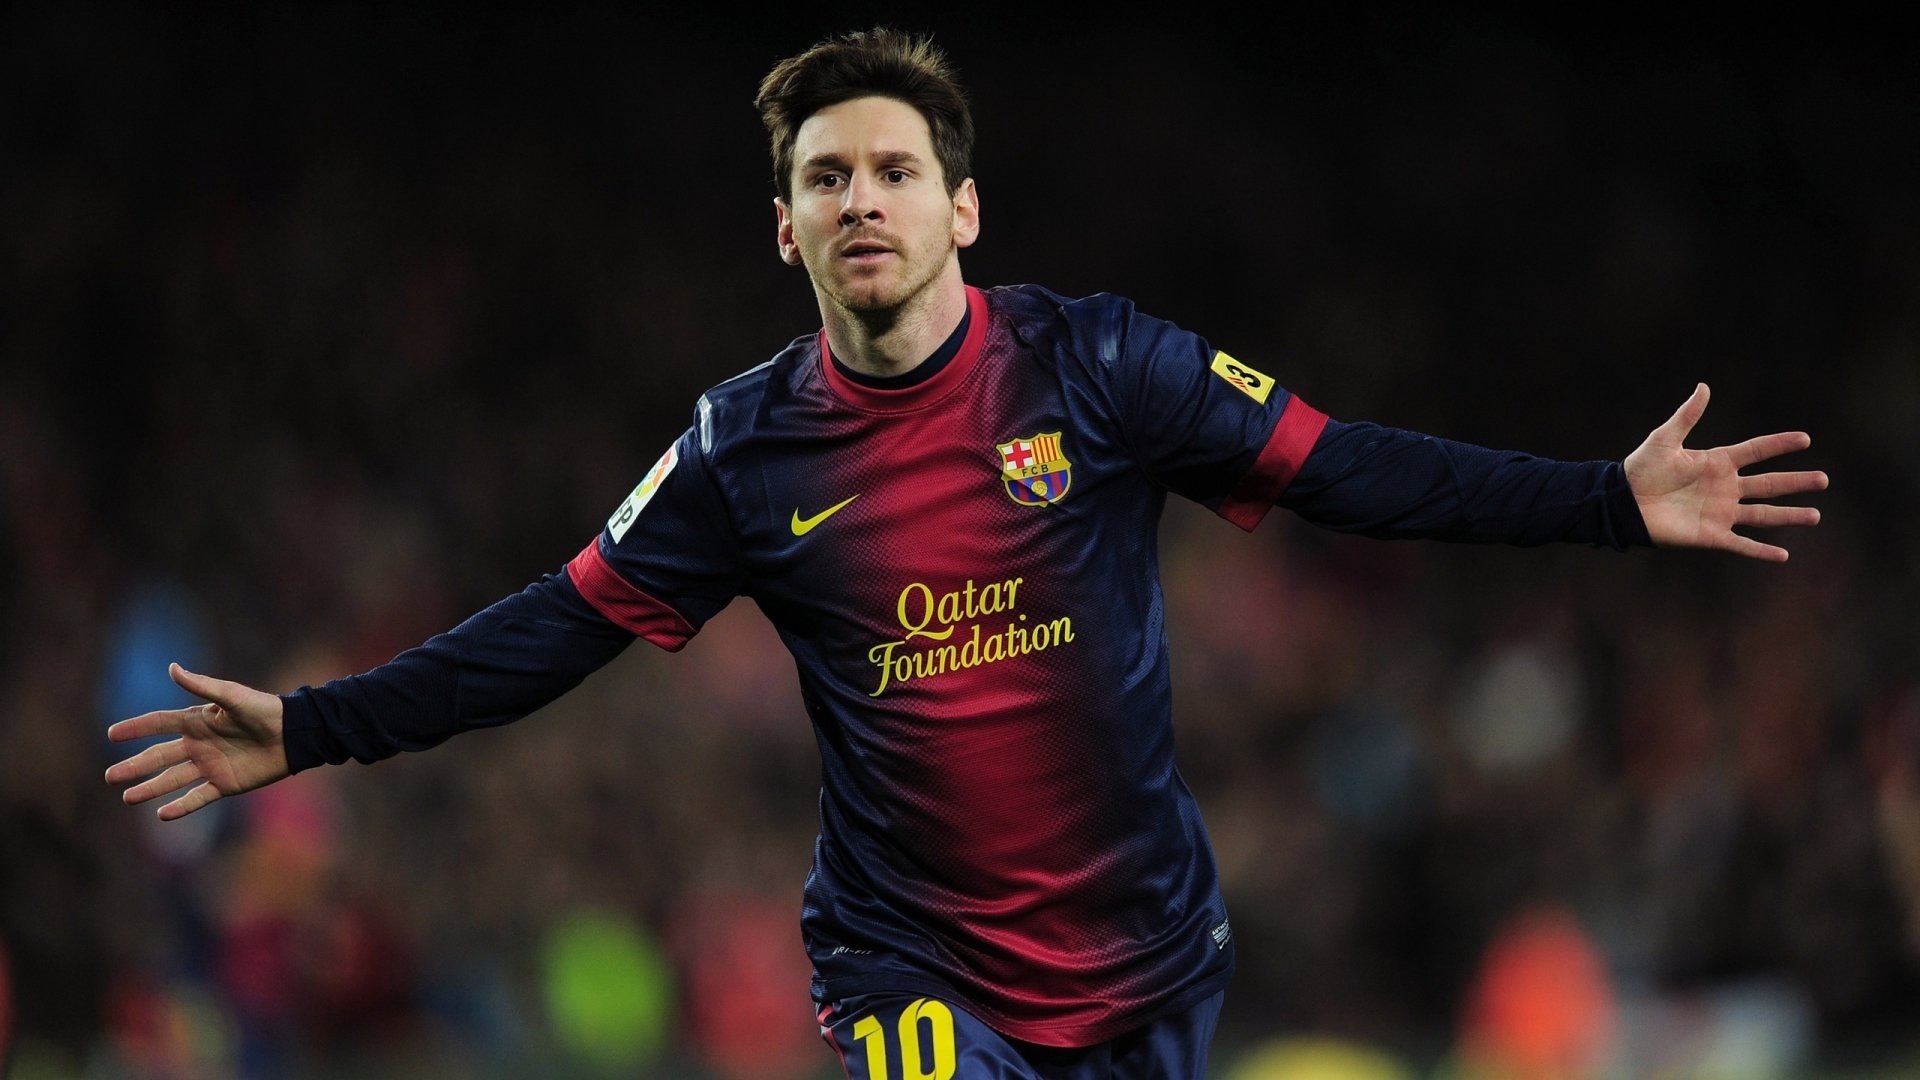 Fondos de pantalla de Messi full HD